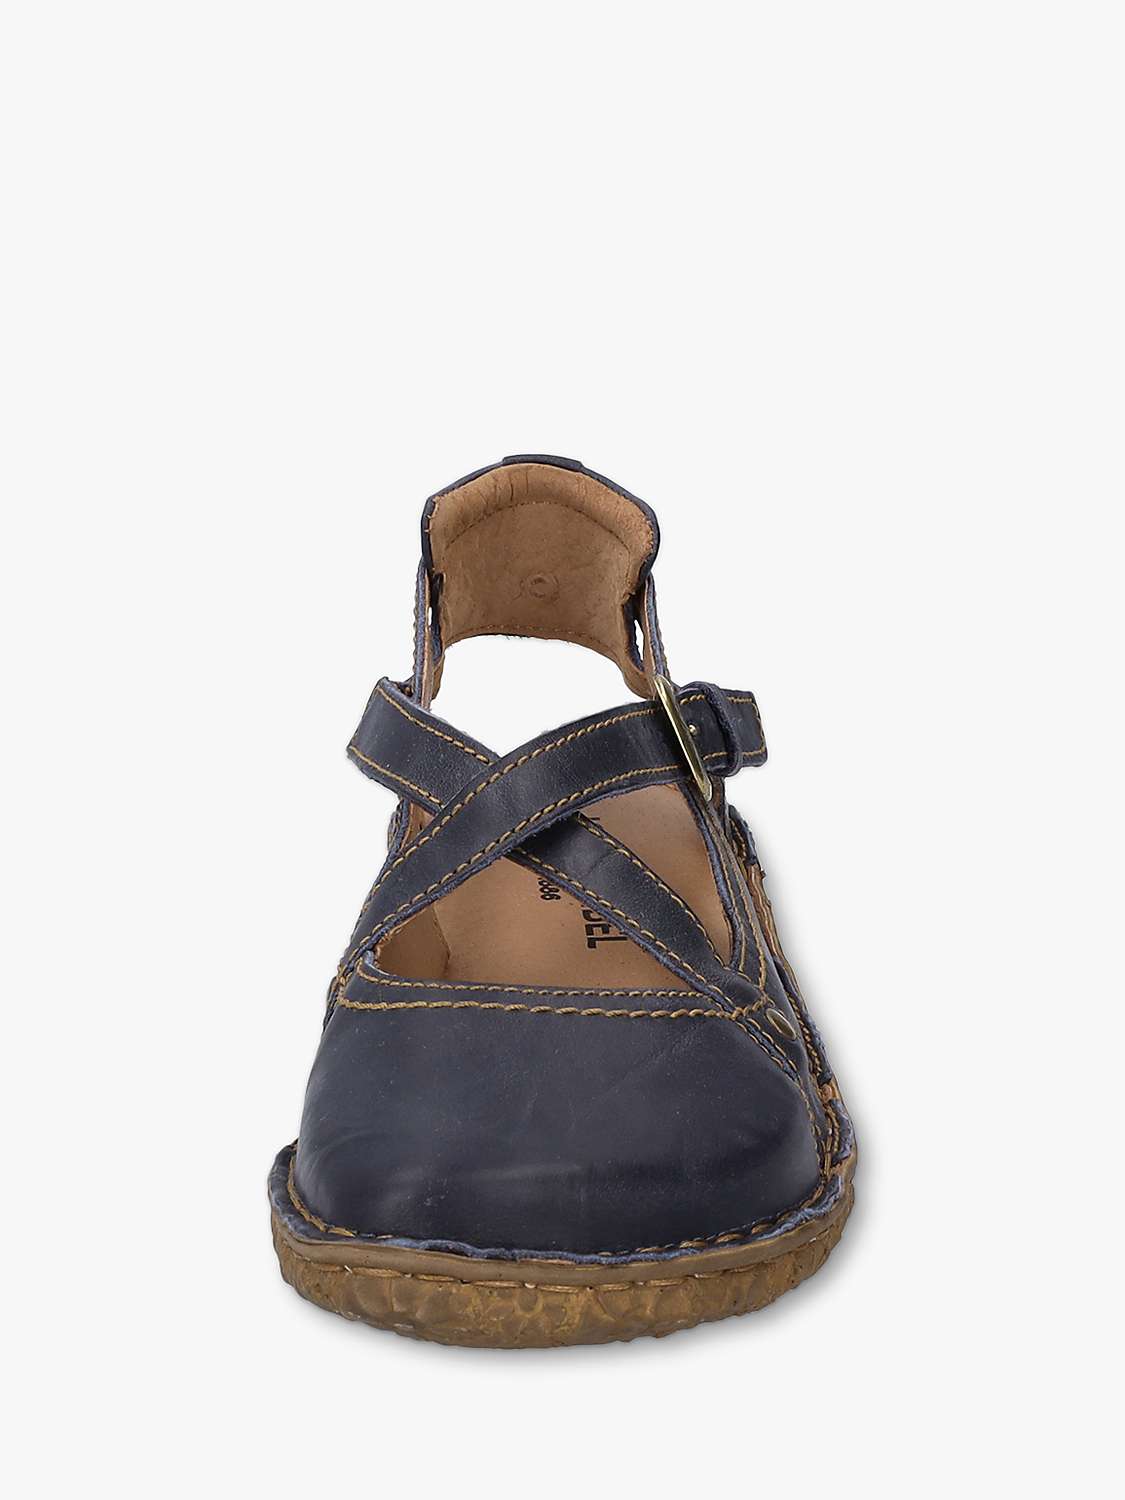 Buy Josef Seibel Rosalie 13 Leather Slingback Sandals Online at johnlewis.com